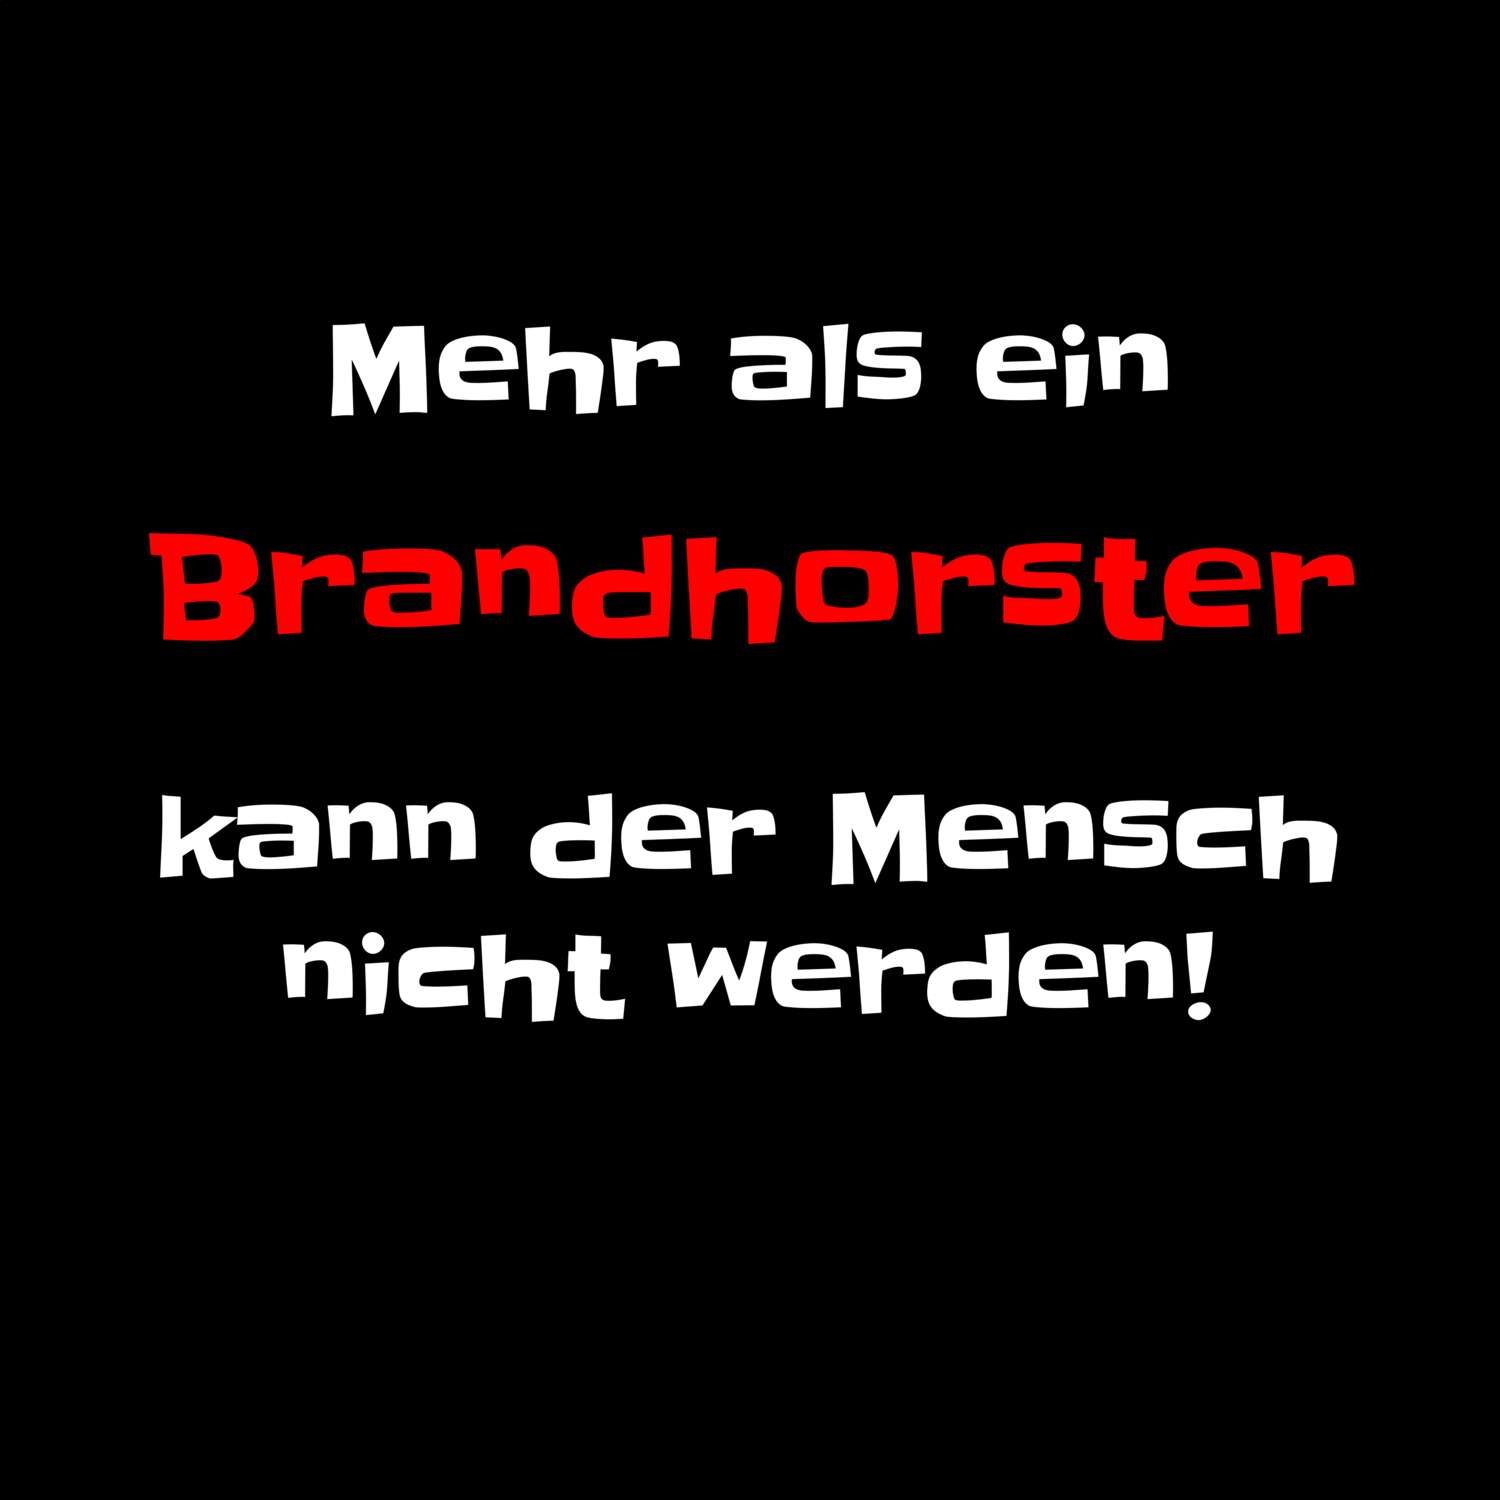 Brandhorst T-Shirt »Mehr als ein«